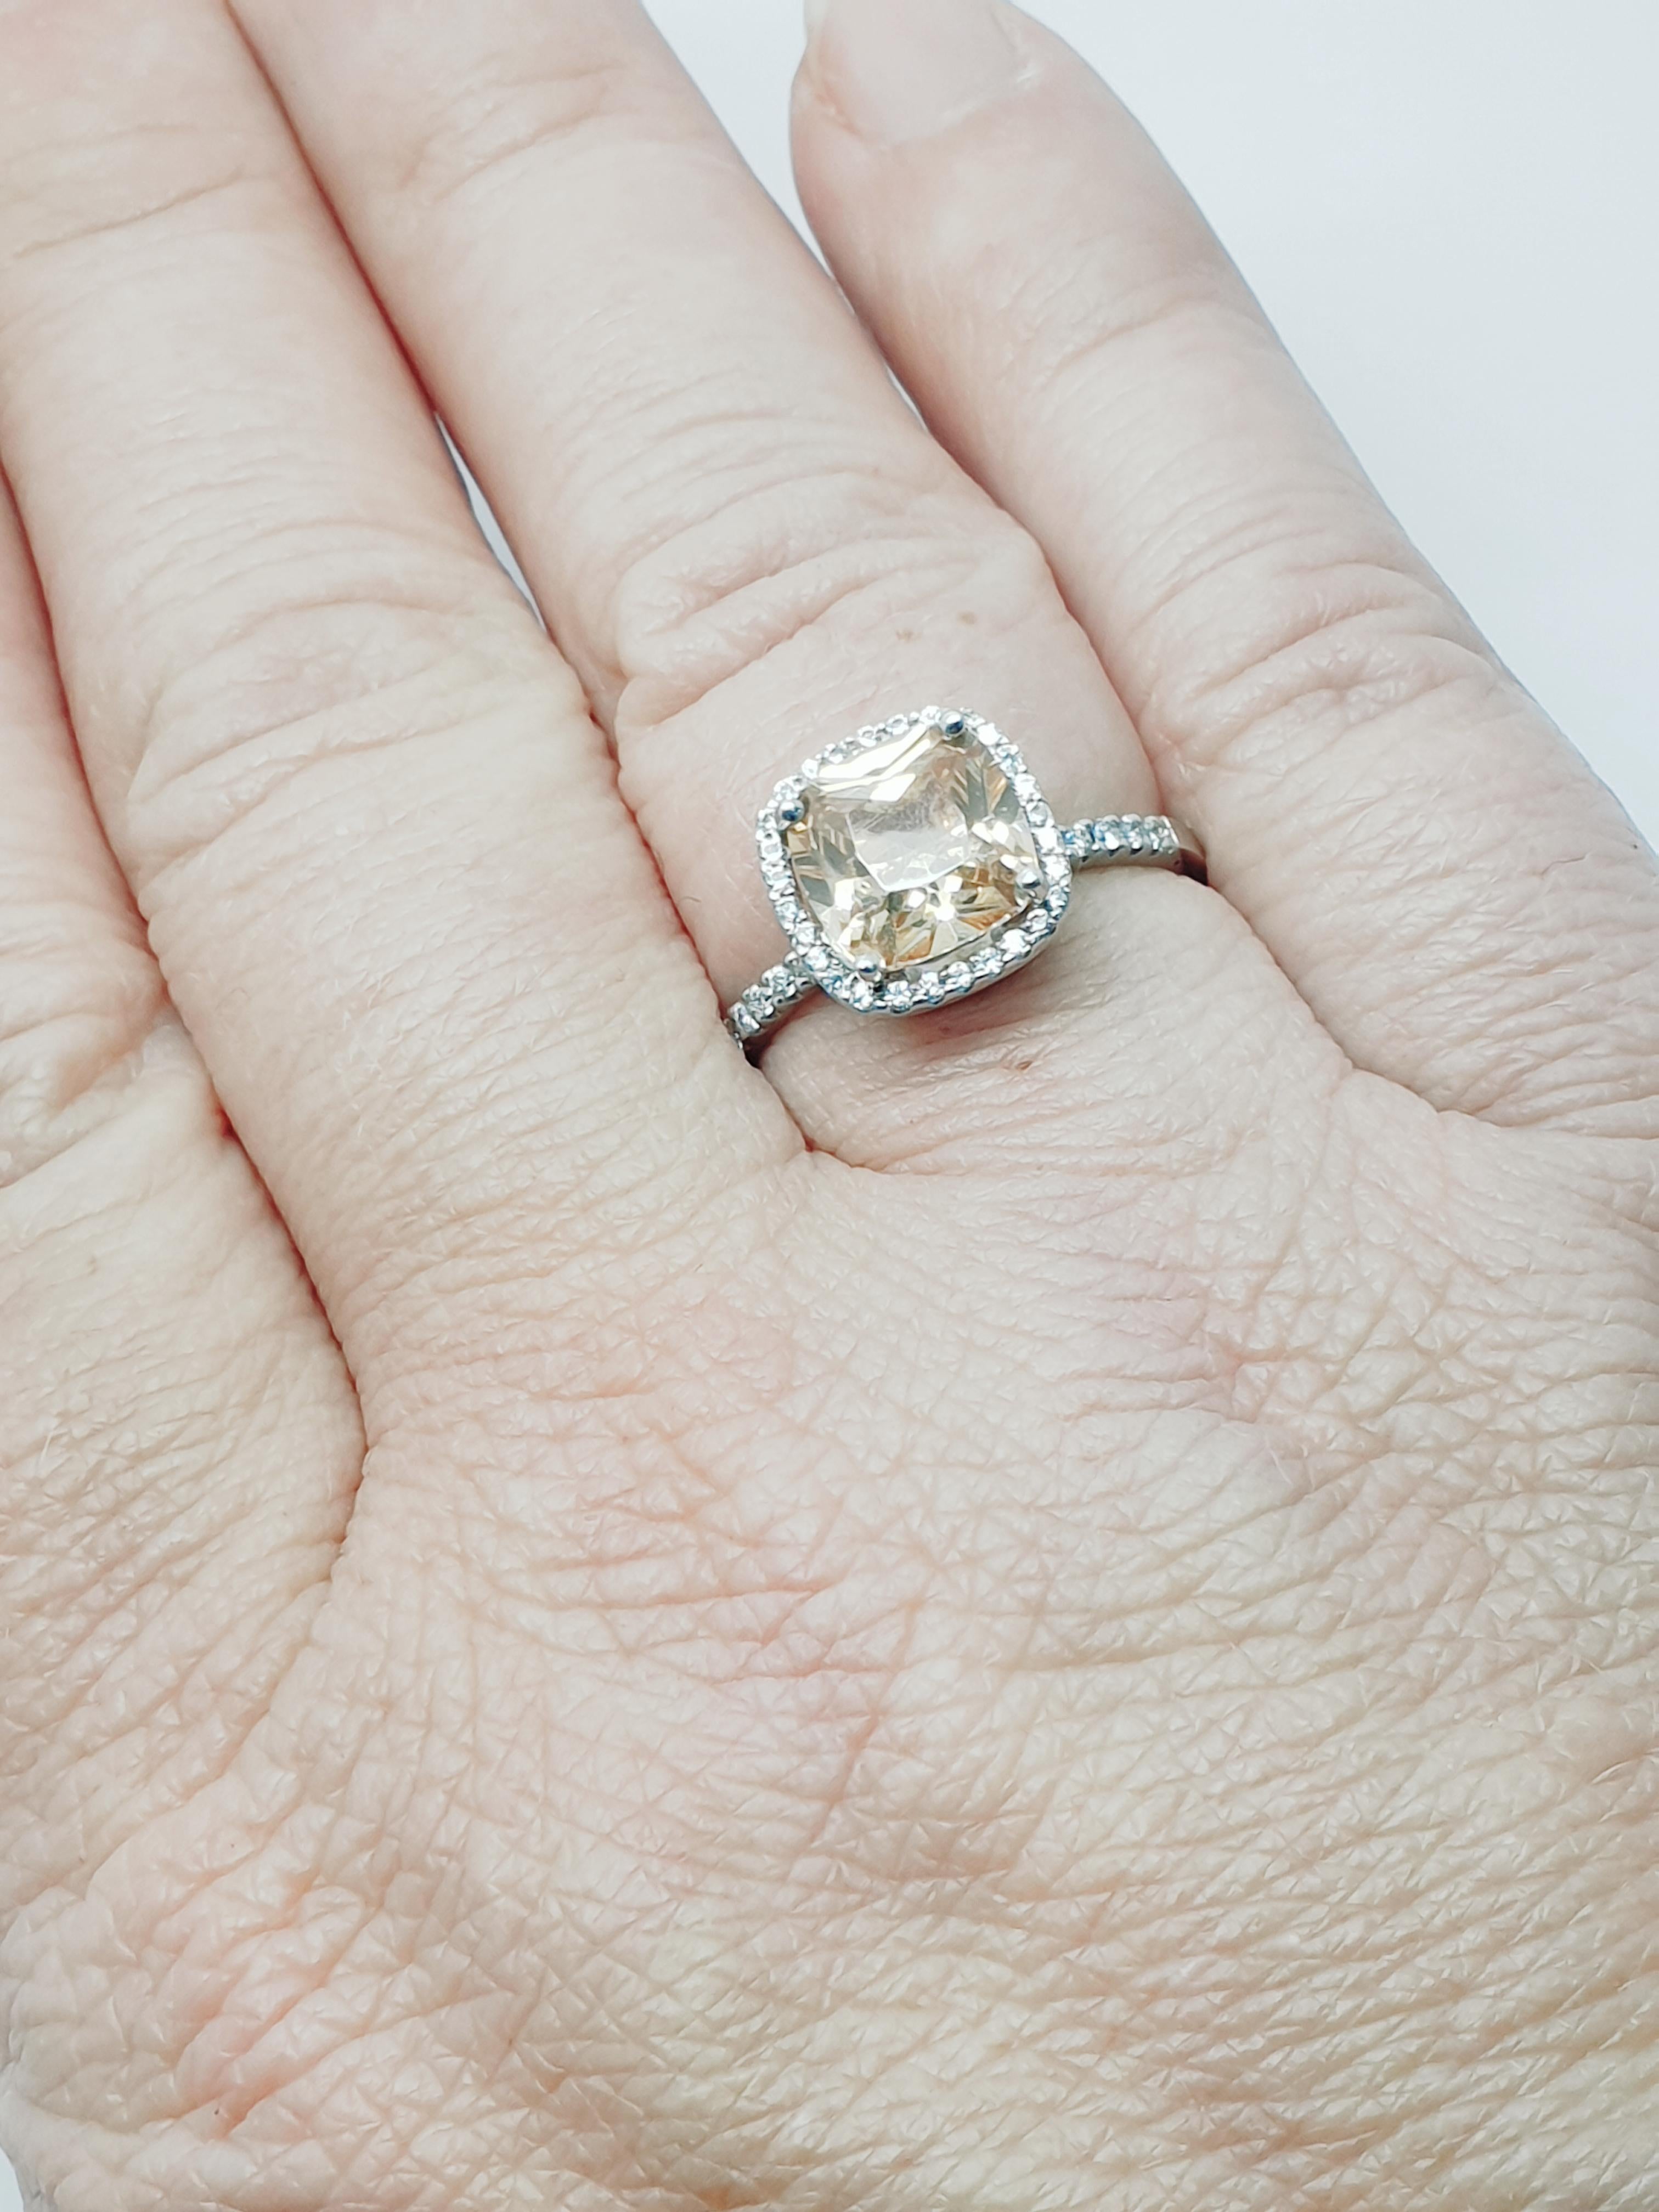 Bieten zum Verkauf eine maßgeschneiderte Halo-Stil Zirkon Diamantring. Der Zirkon hat eine schöne pfirsichfarbene Kissenform mit einem Gewicht von ca. 2,5 Karat, der Mittelstein ist mit kleinen Diamanten umgeben. Die Diamanten wiegen insgesamt 0,16